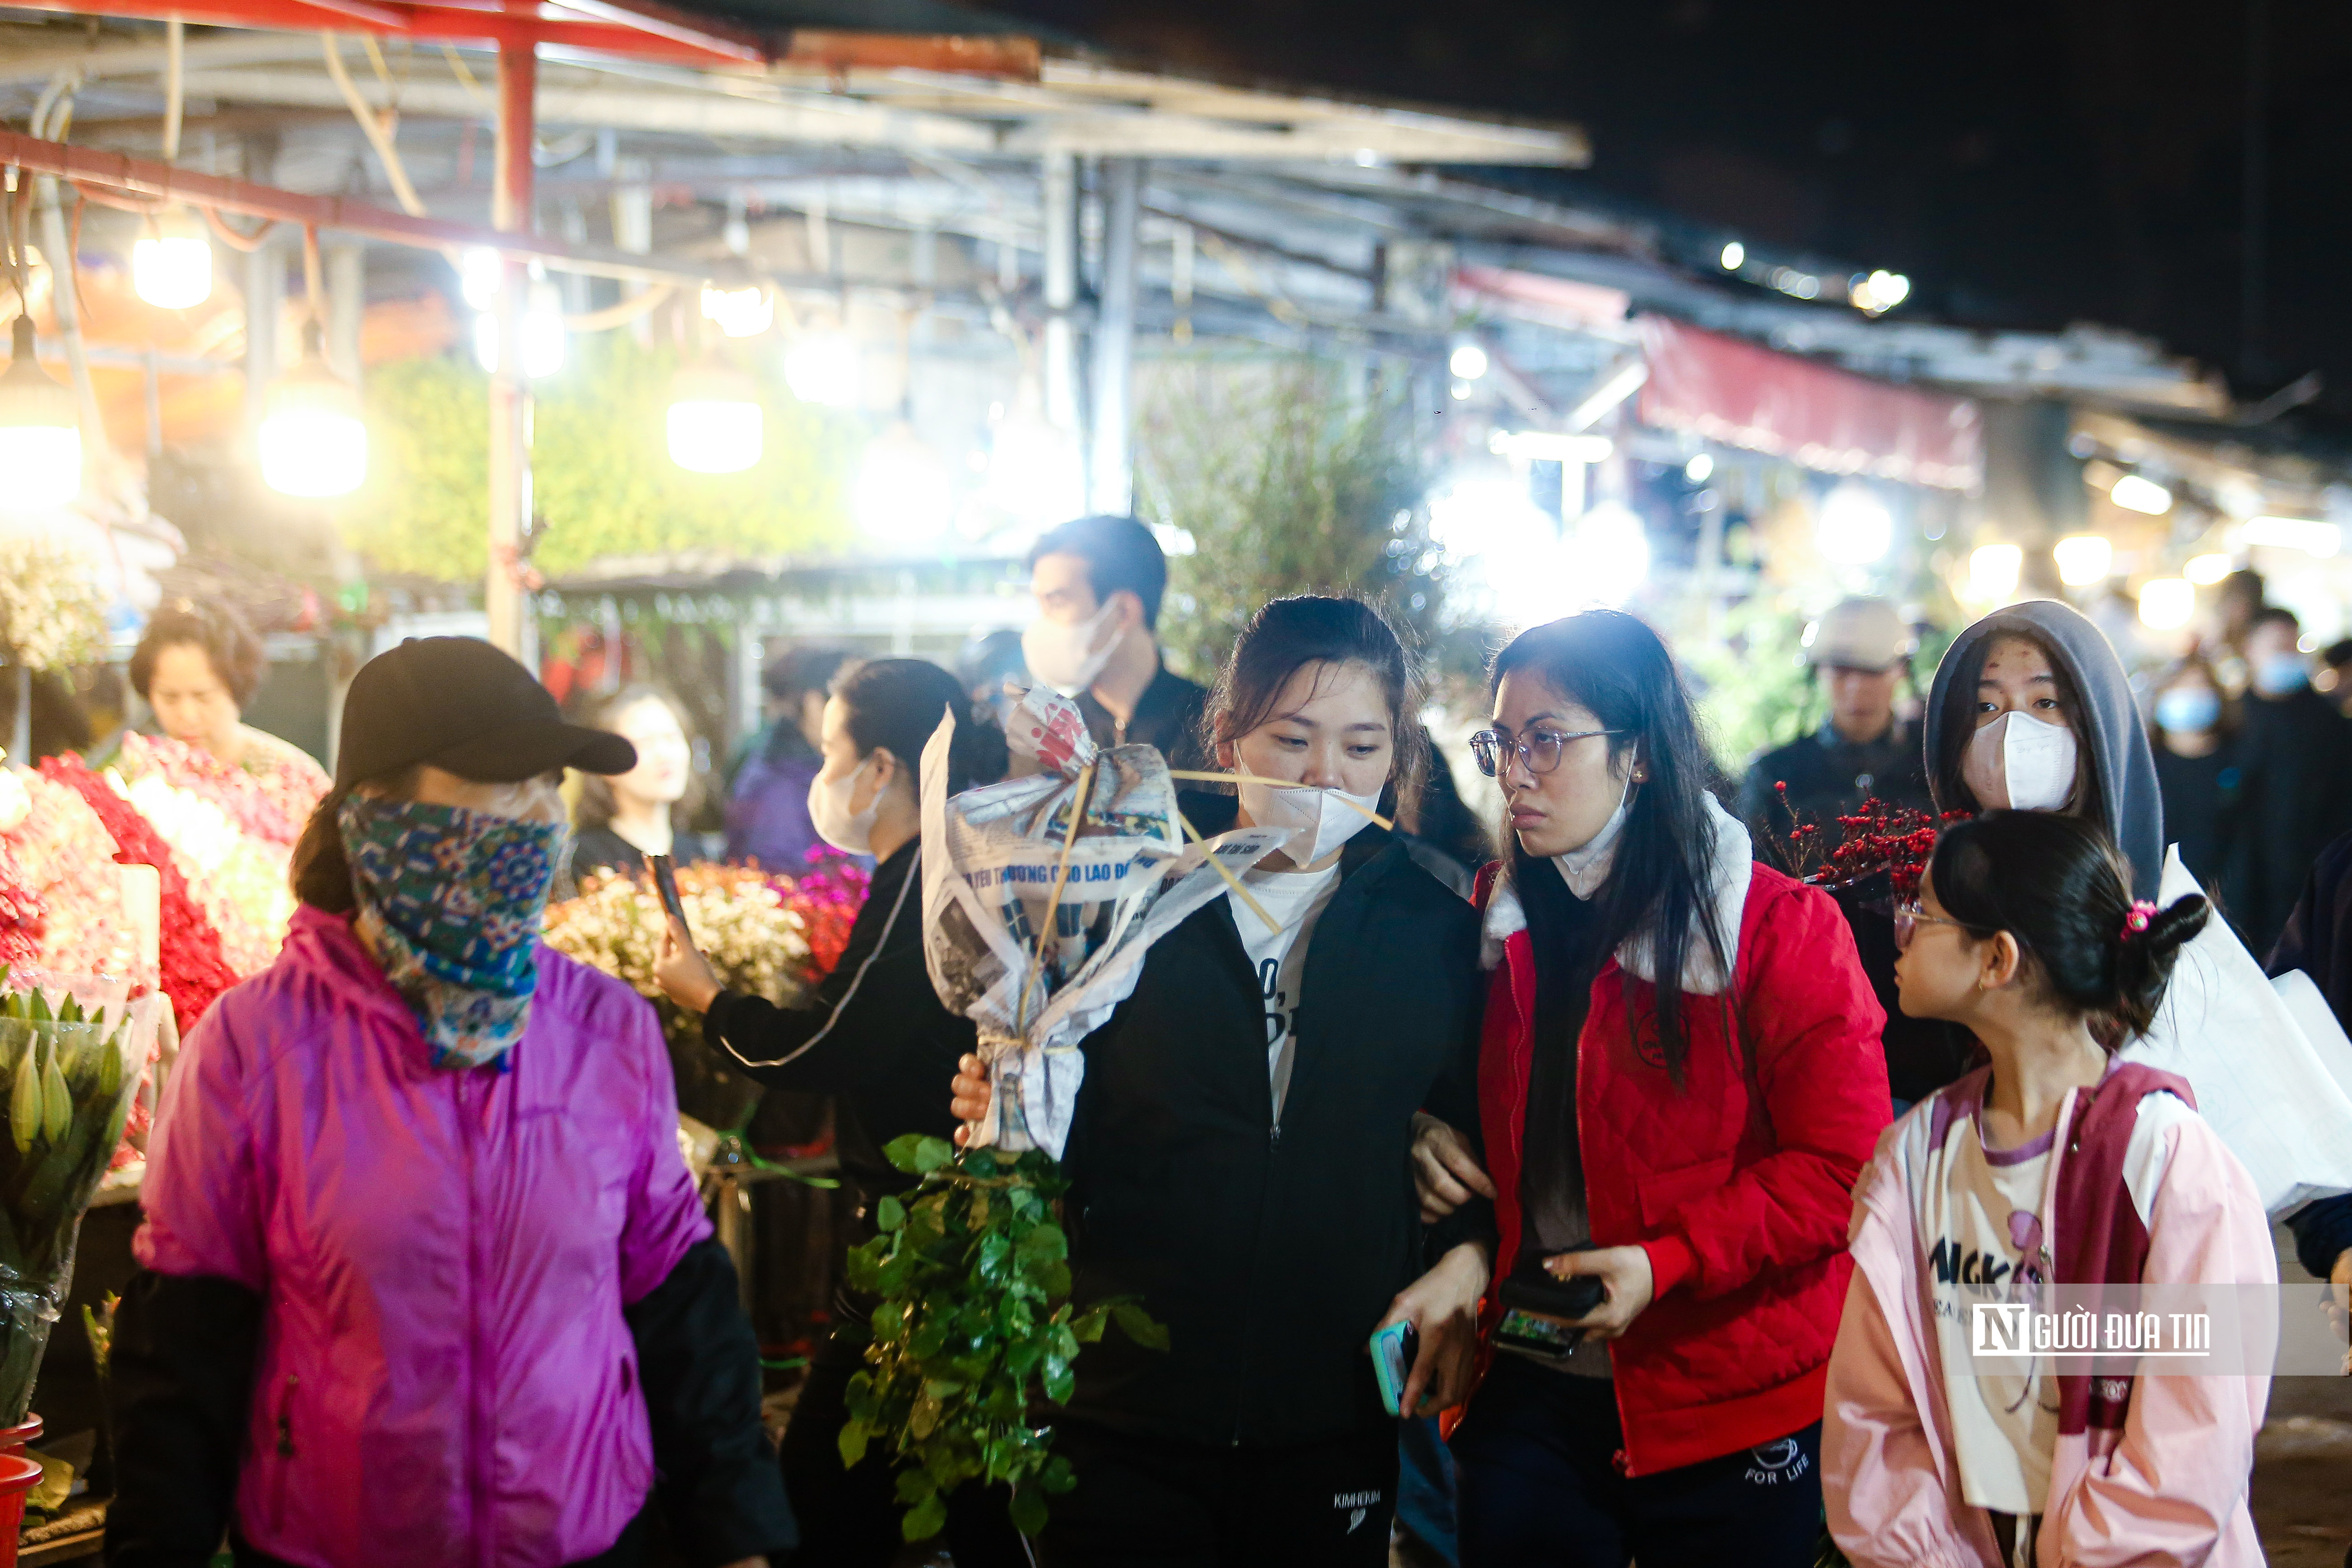 Dân sinh - Khung cảnh tấp nập tại chợ hoa Quảng An ngày cận Tết (Hình 10).